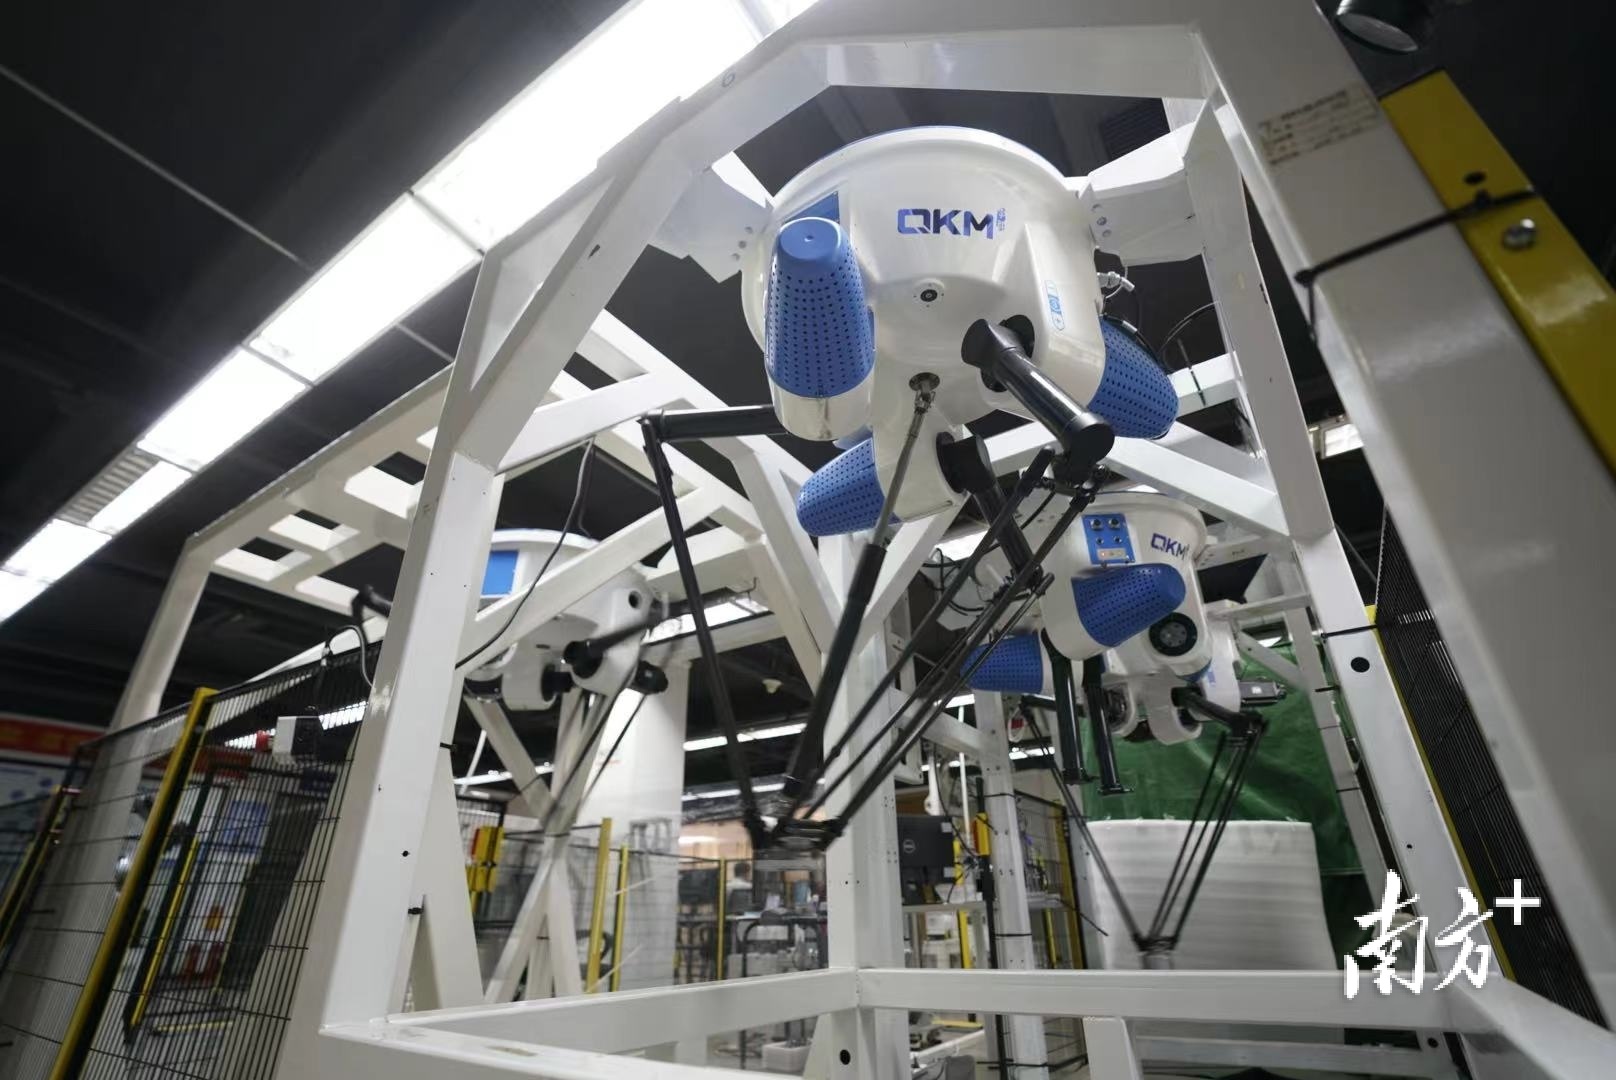 弓叶科技有限公司生产的垃圾分选机器人。